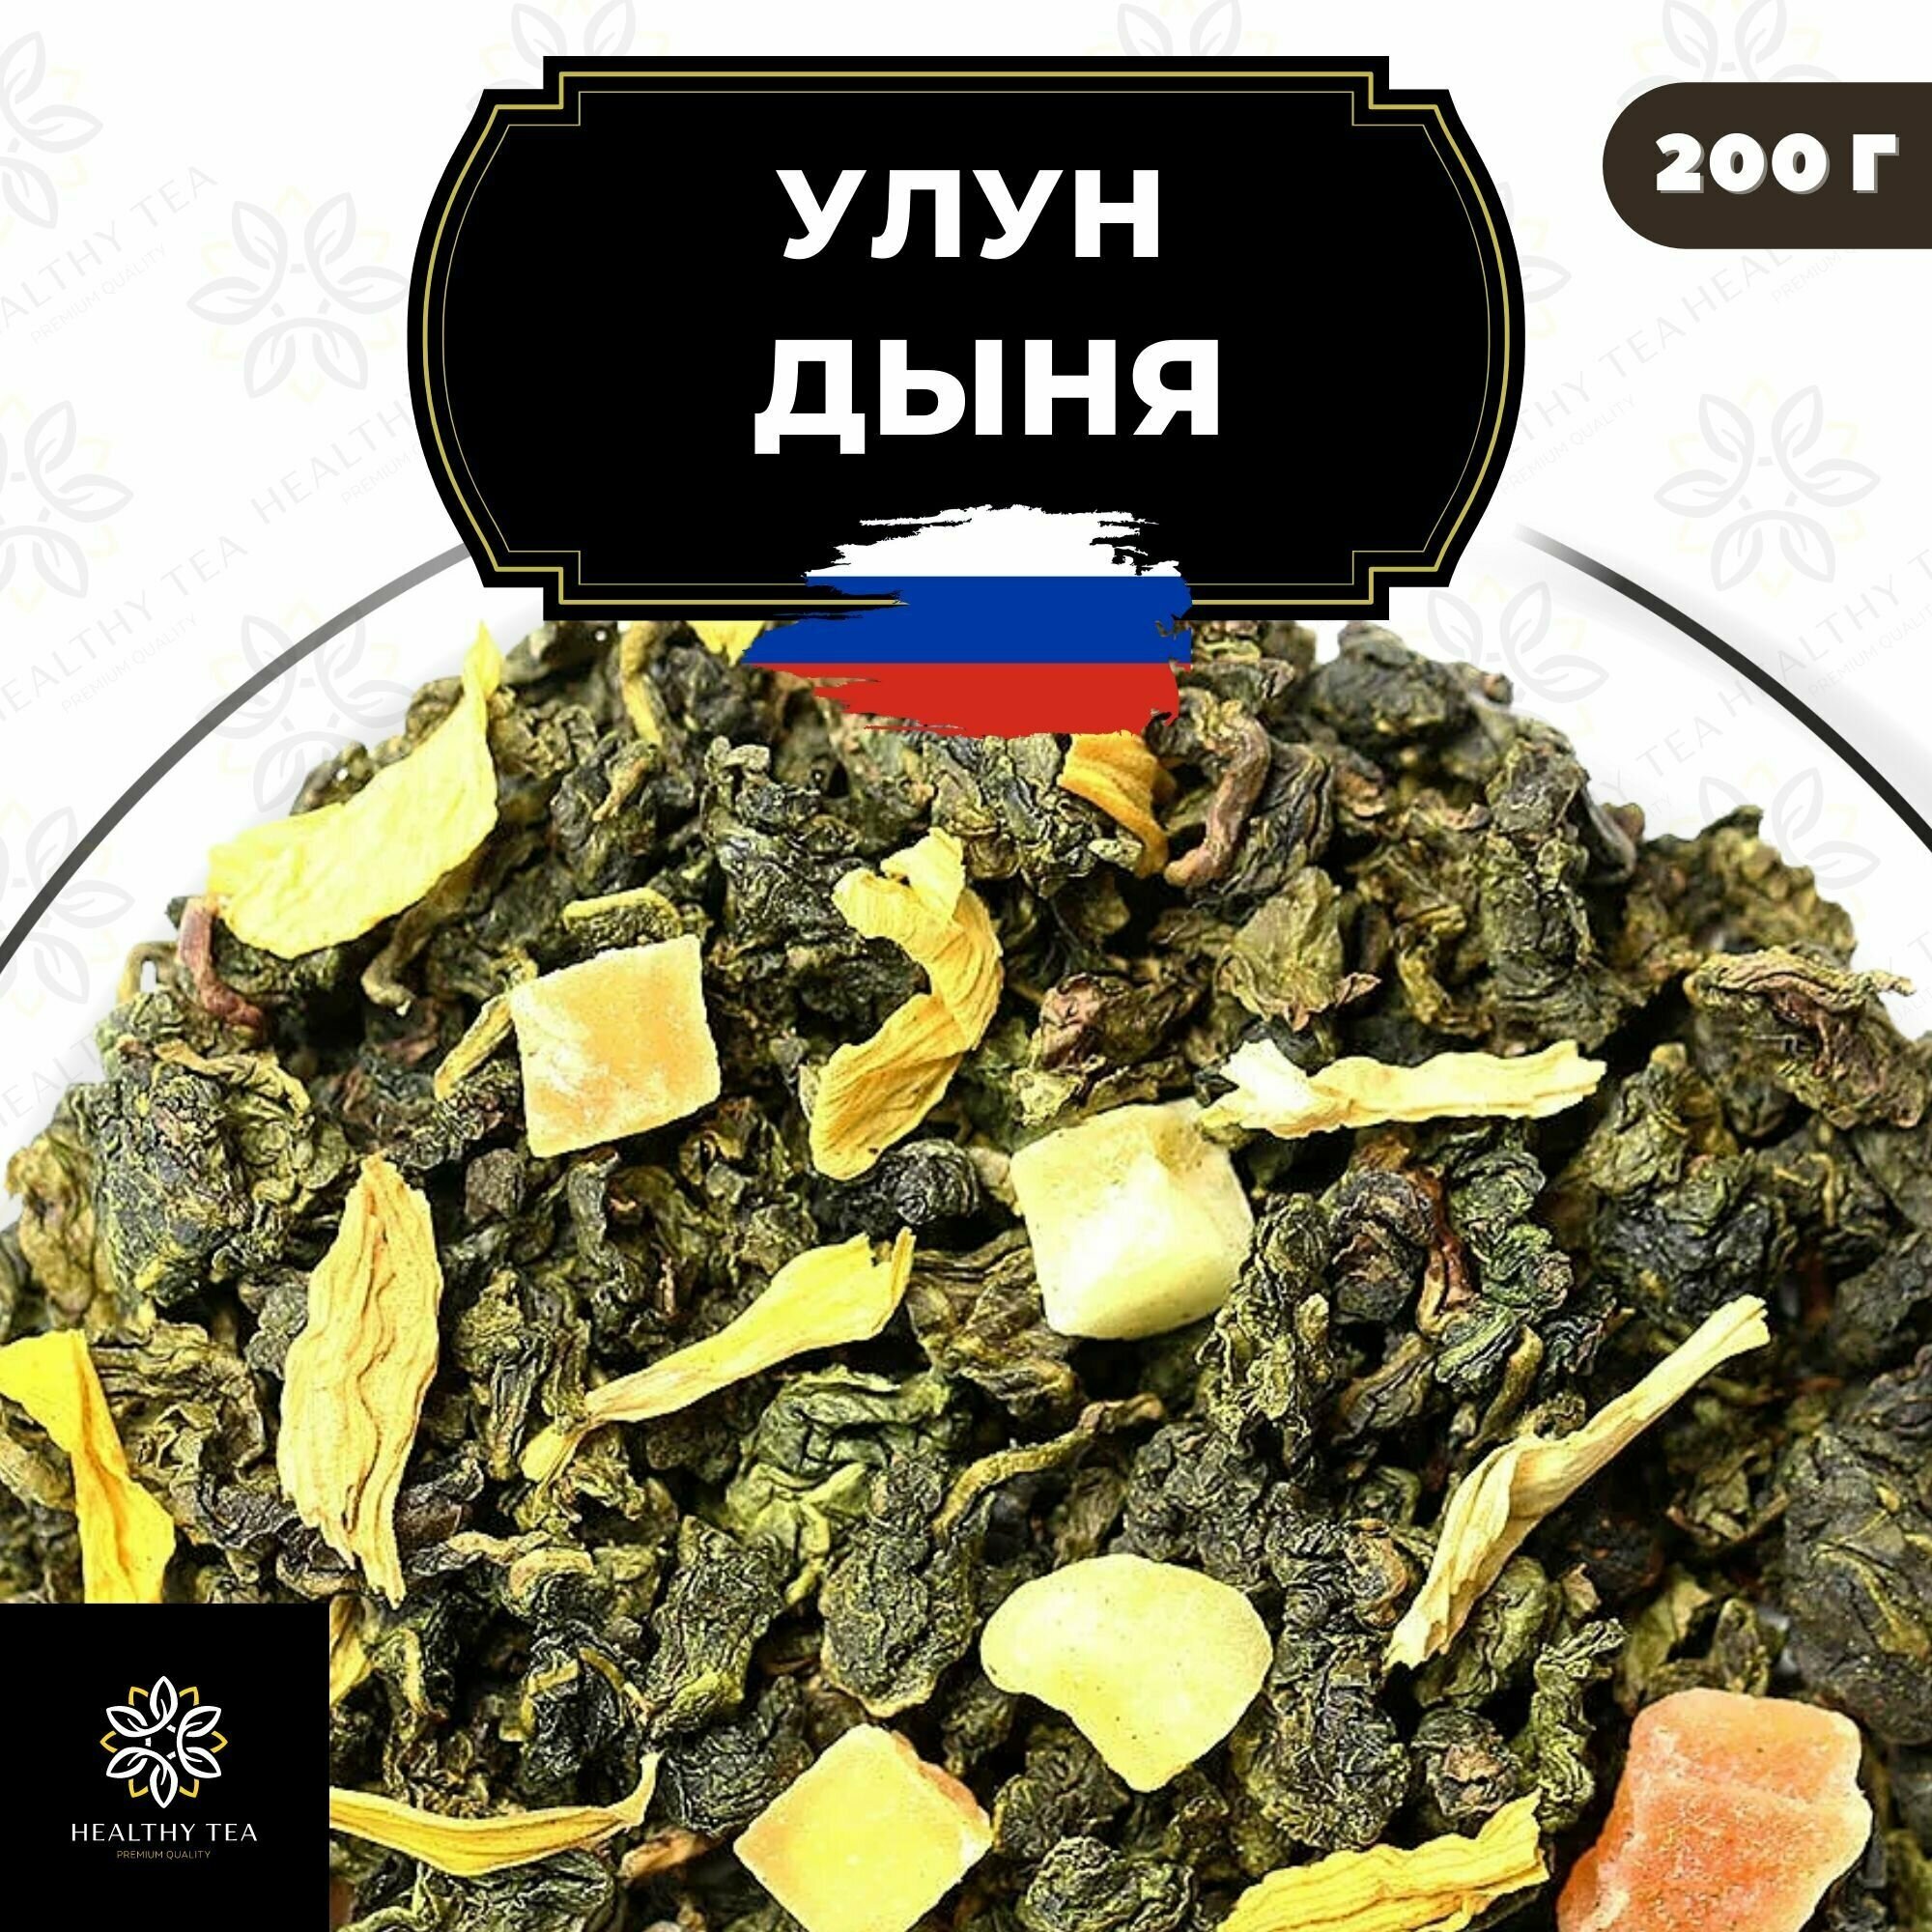 Китайский чай Улун Дыня с папайей Полезный чай / HEALTHY TEA, 200 г